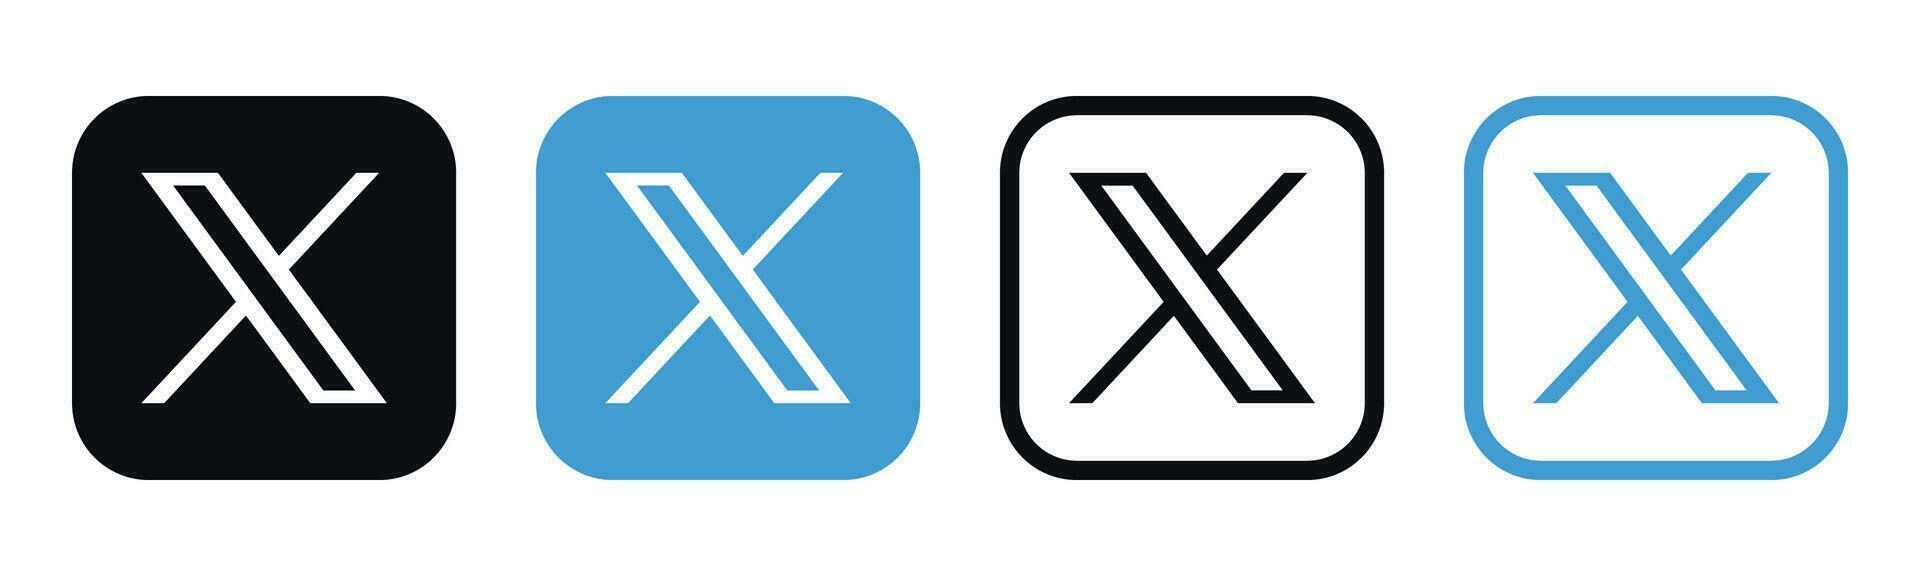 X nieuw twitter sociaal media merk logo vector